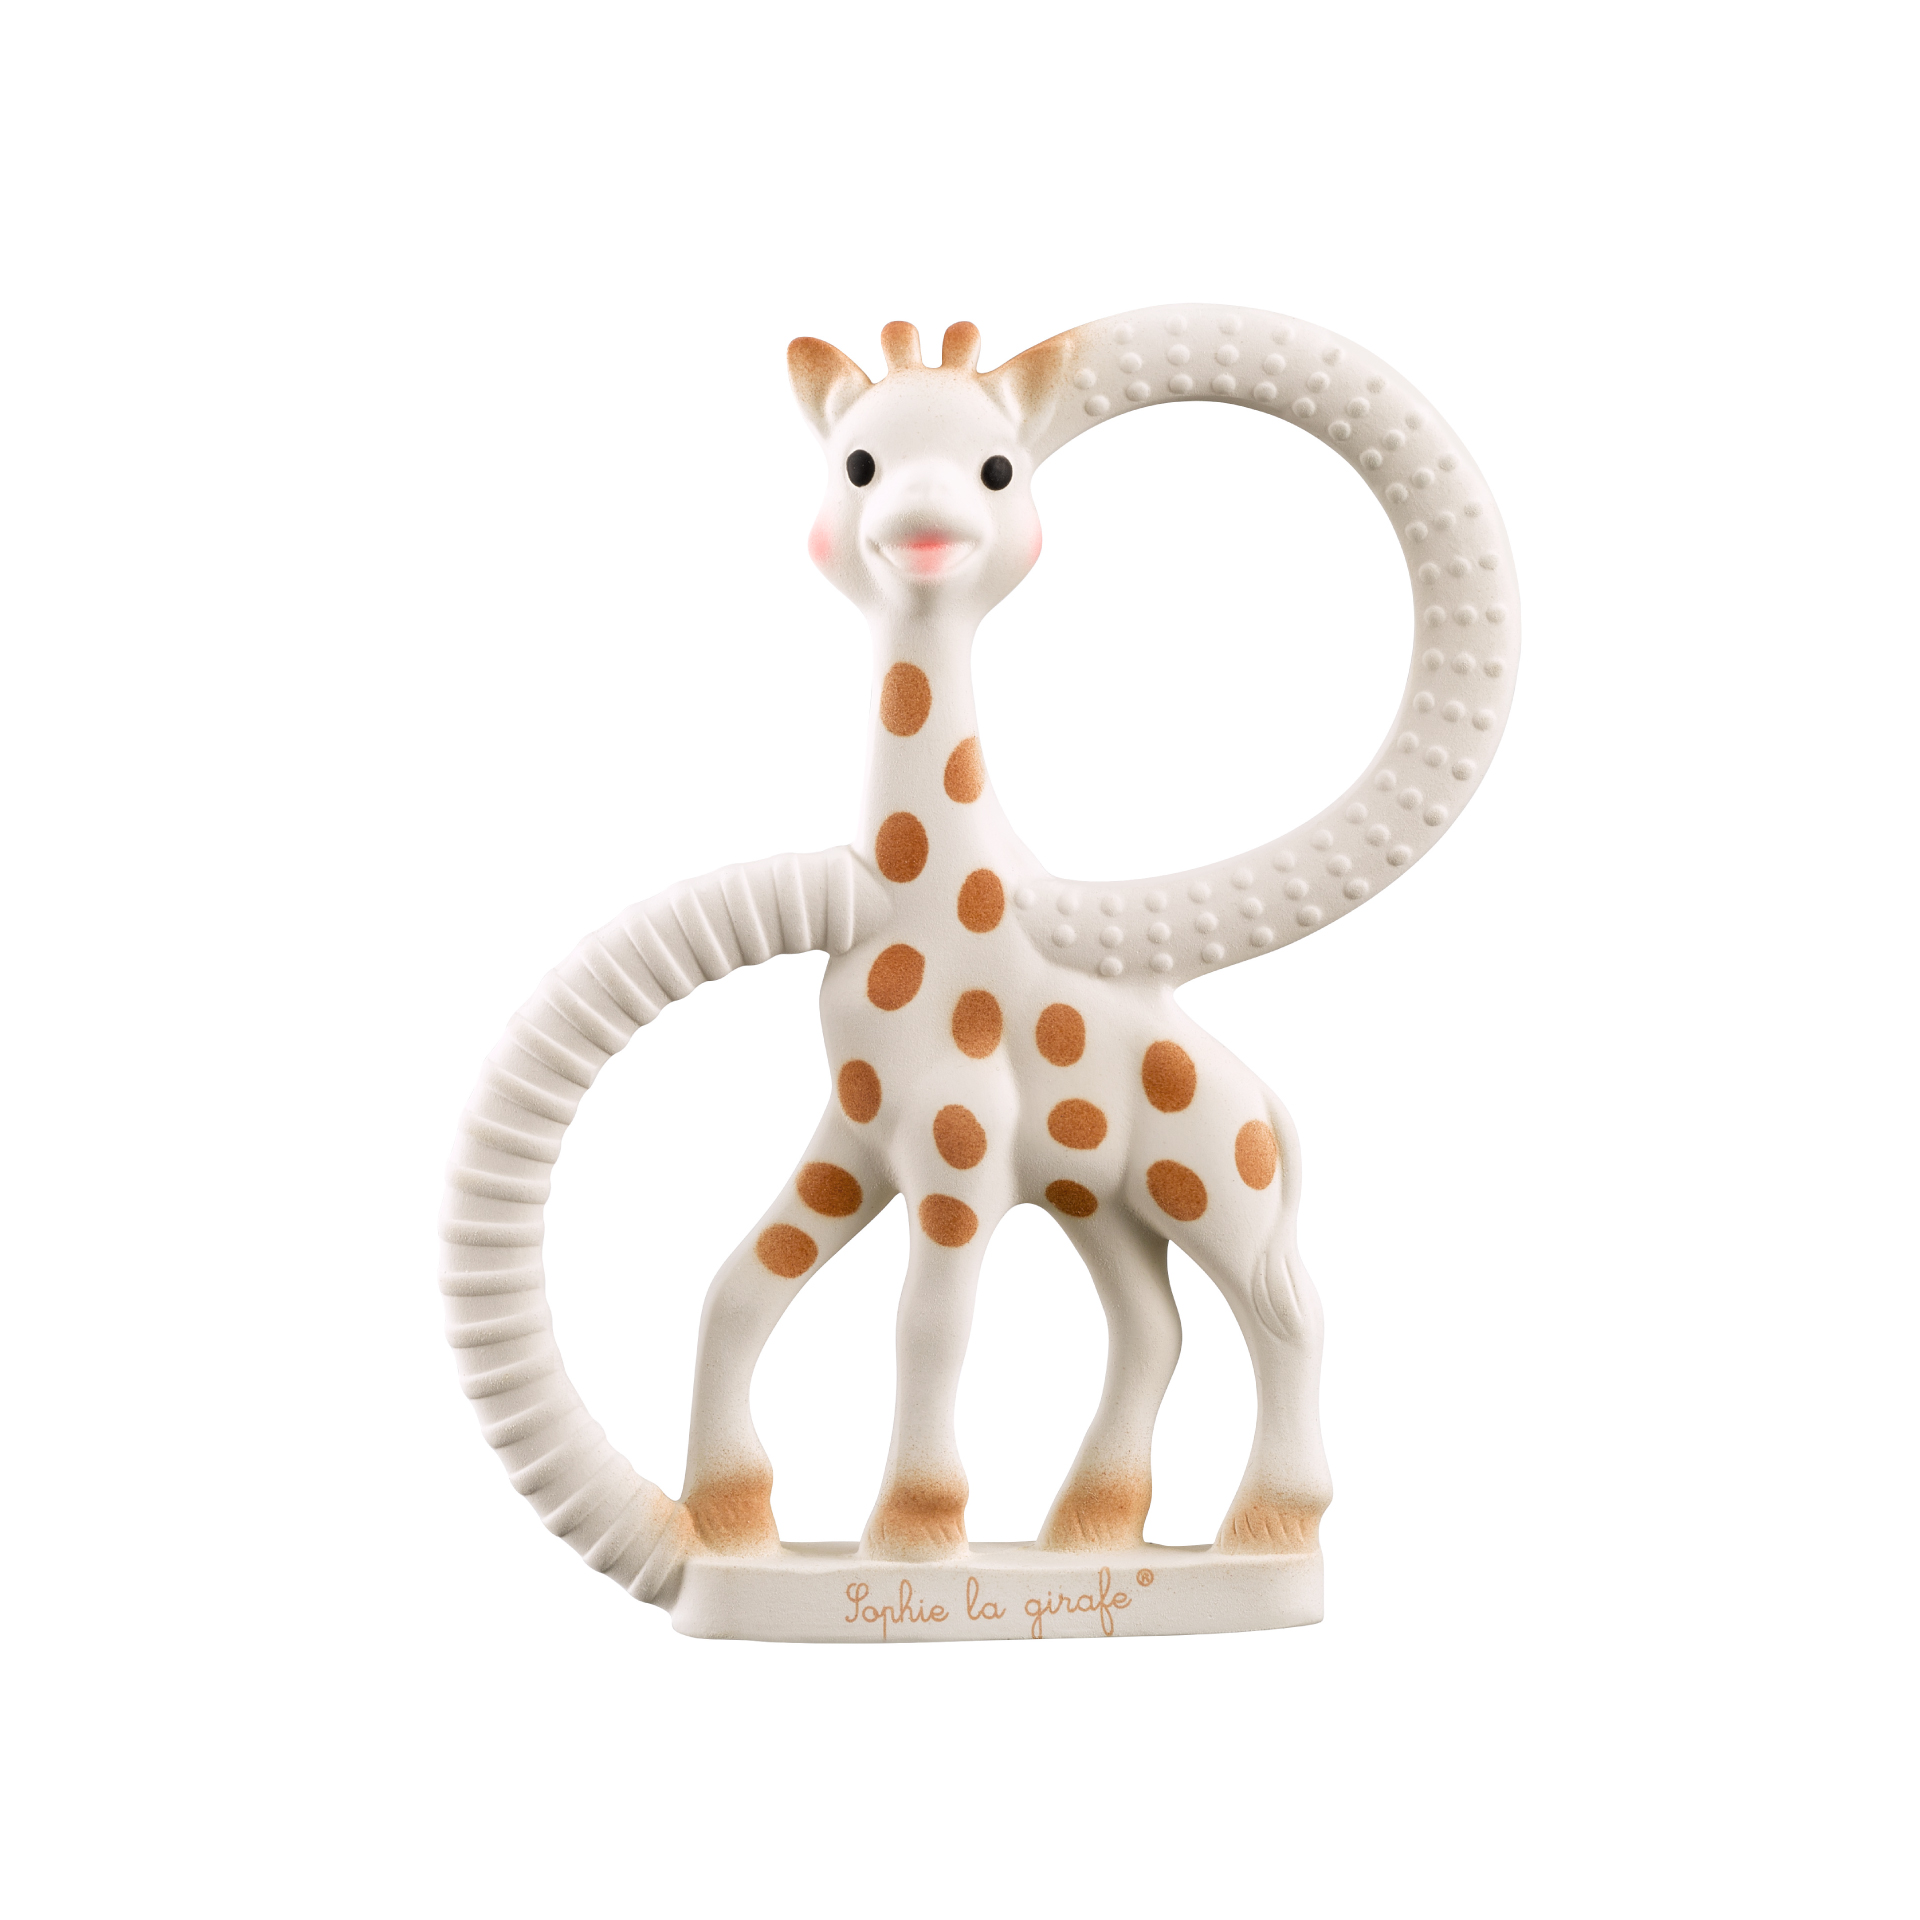 キリンのソフィー 日本公式サイト | Sophie la girafe Japan official 